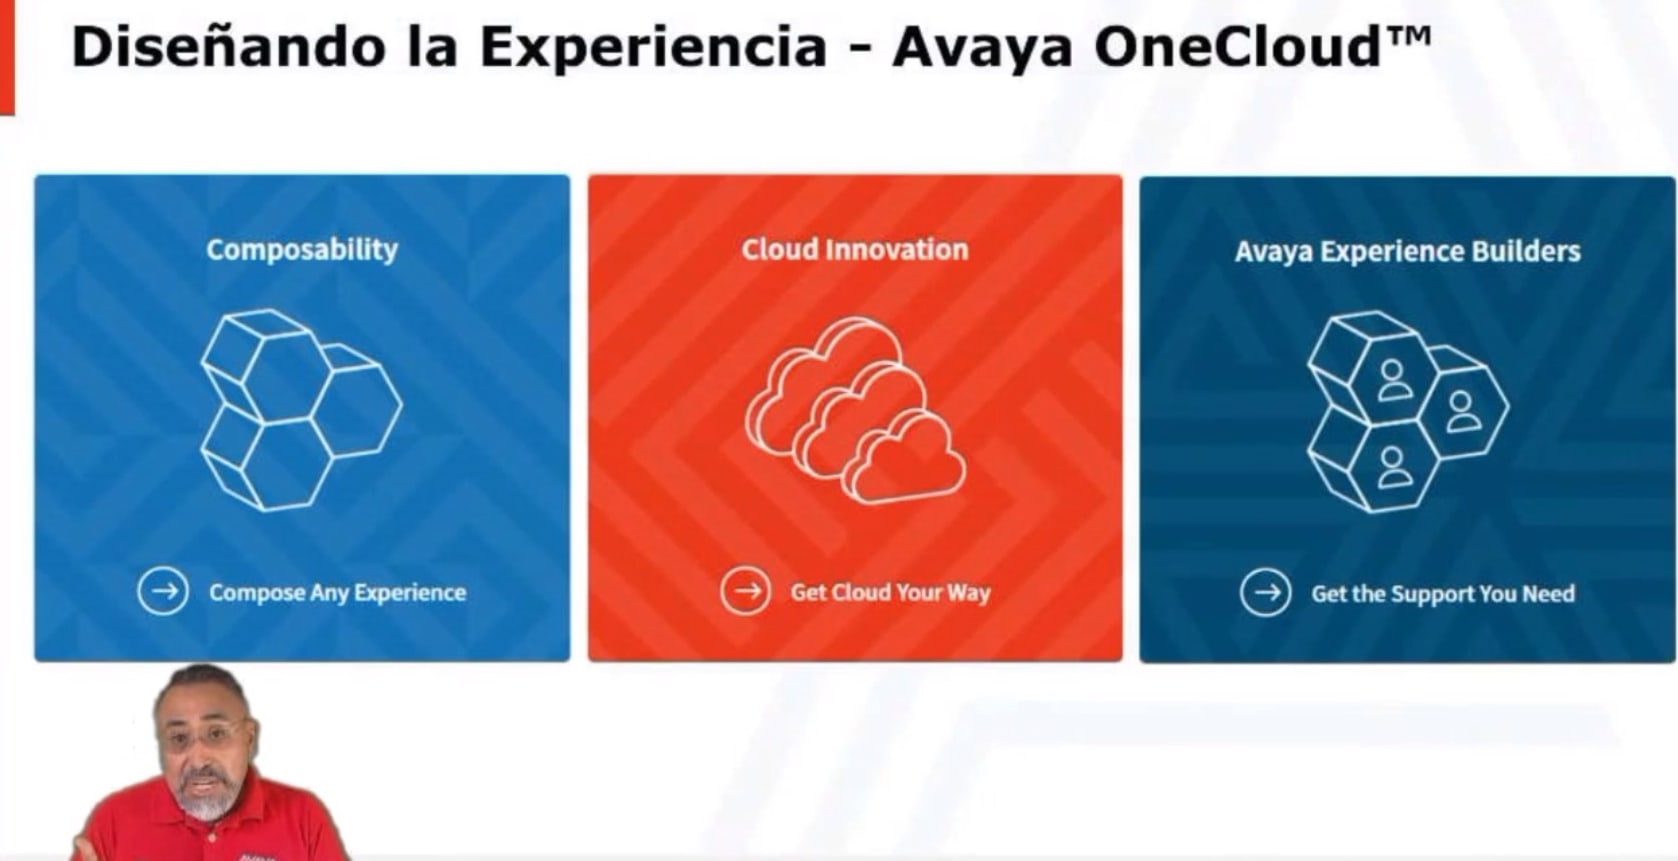 Automatización, personalización y construcción de experiencias son algunos de los conceptos clave del Experience Avaya Latam